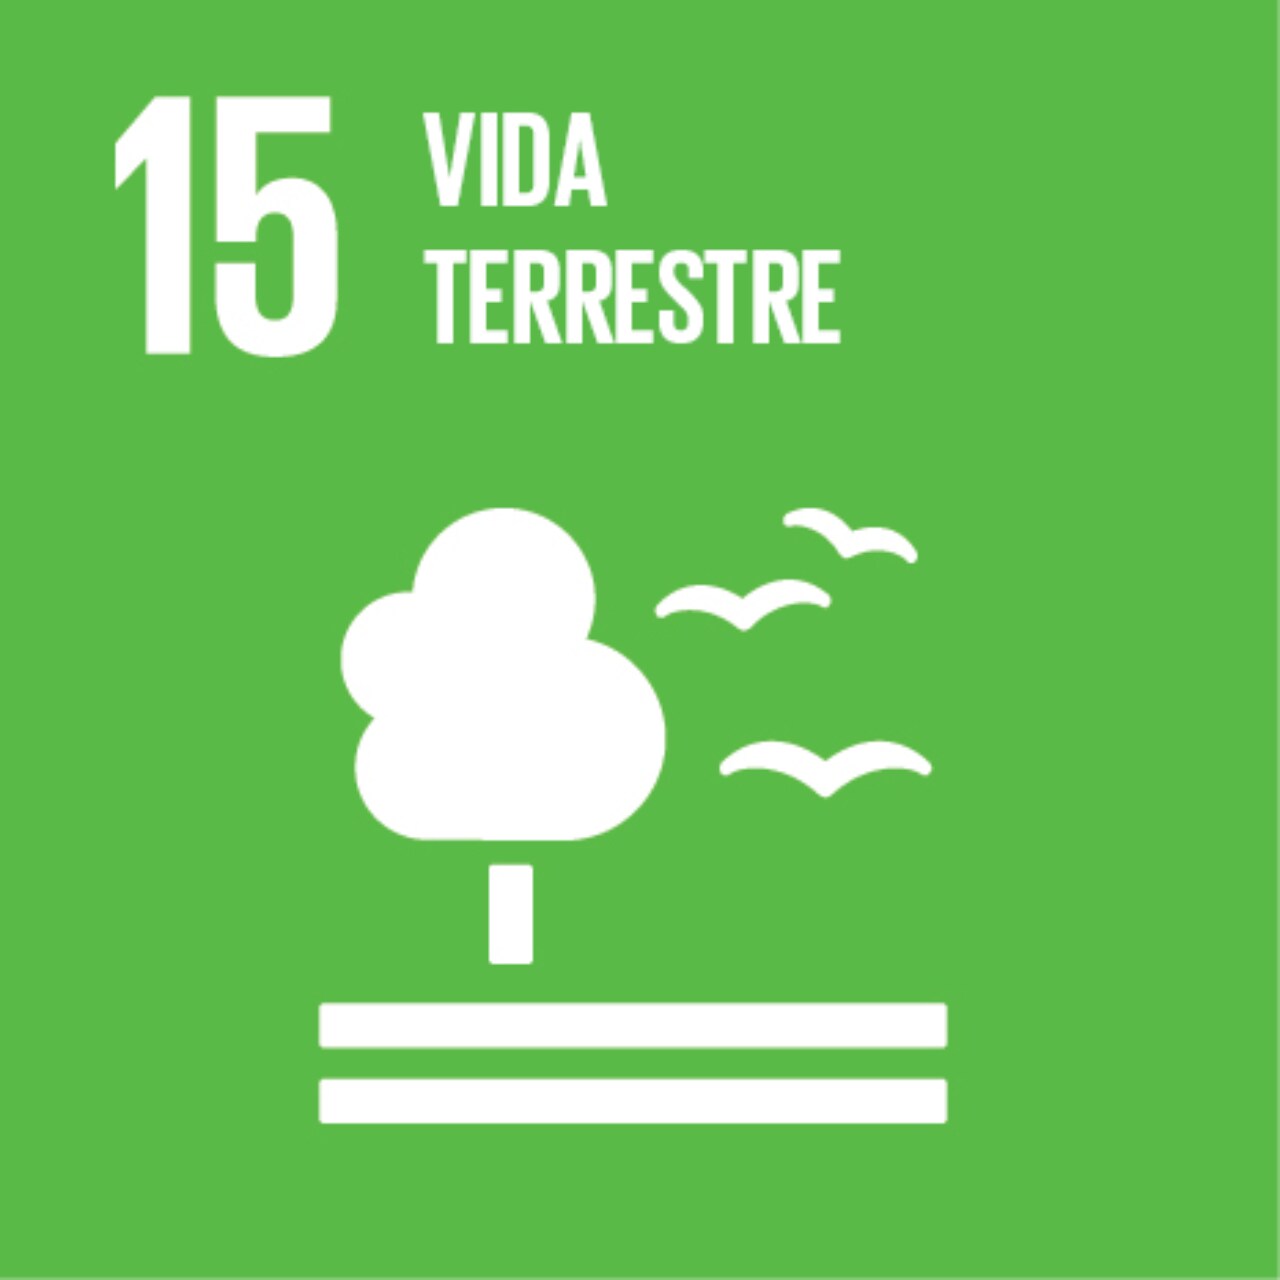 Imagem que representa o ODS número Quinze – Vida terrestre, com fundo verde e os ícones de pássaros e árvore.